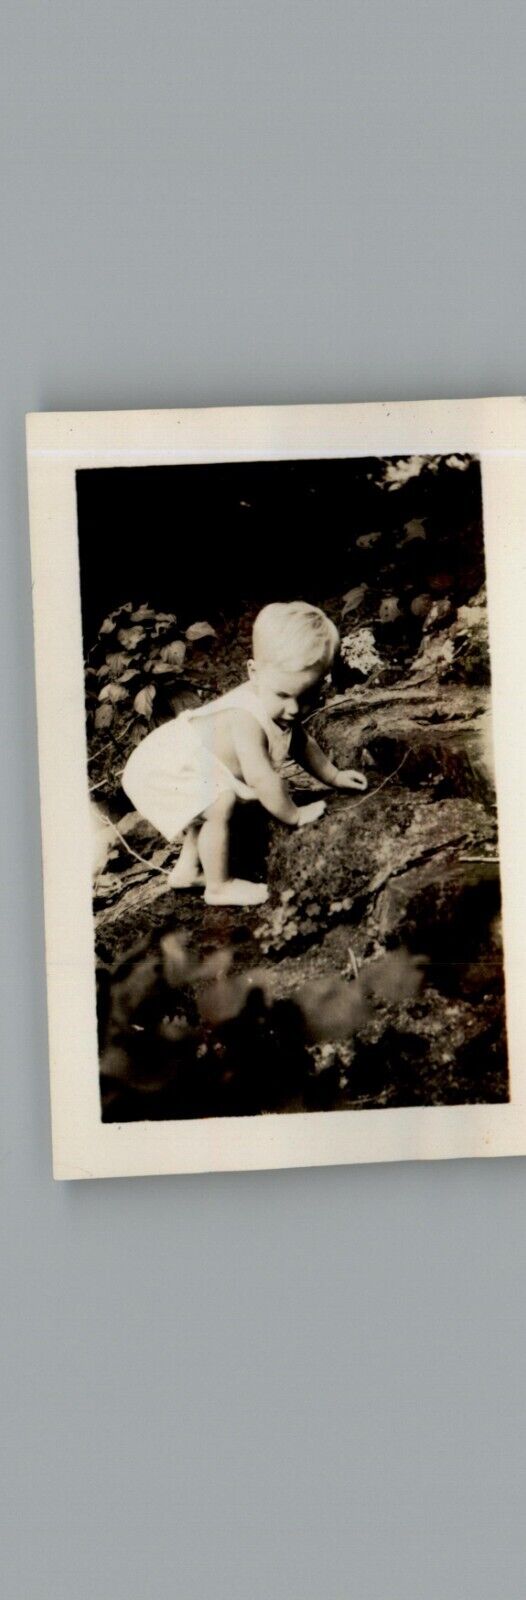 Antique 1940\'s Little Boy Climbing - Black & White Photography Photos